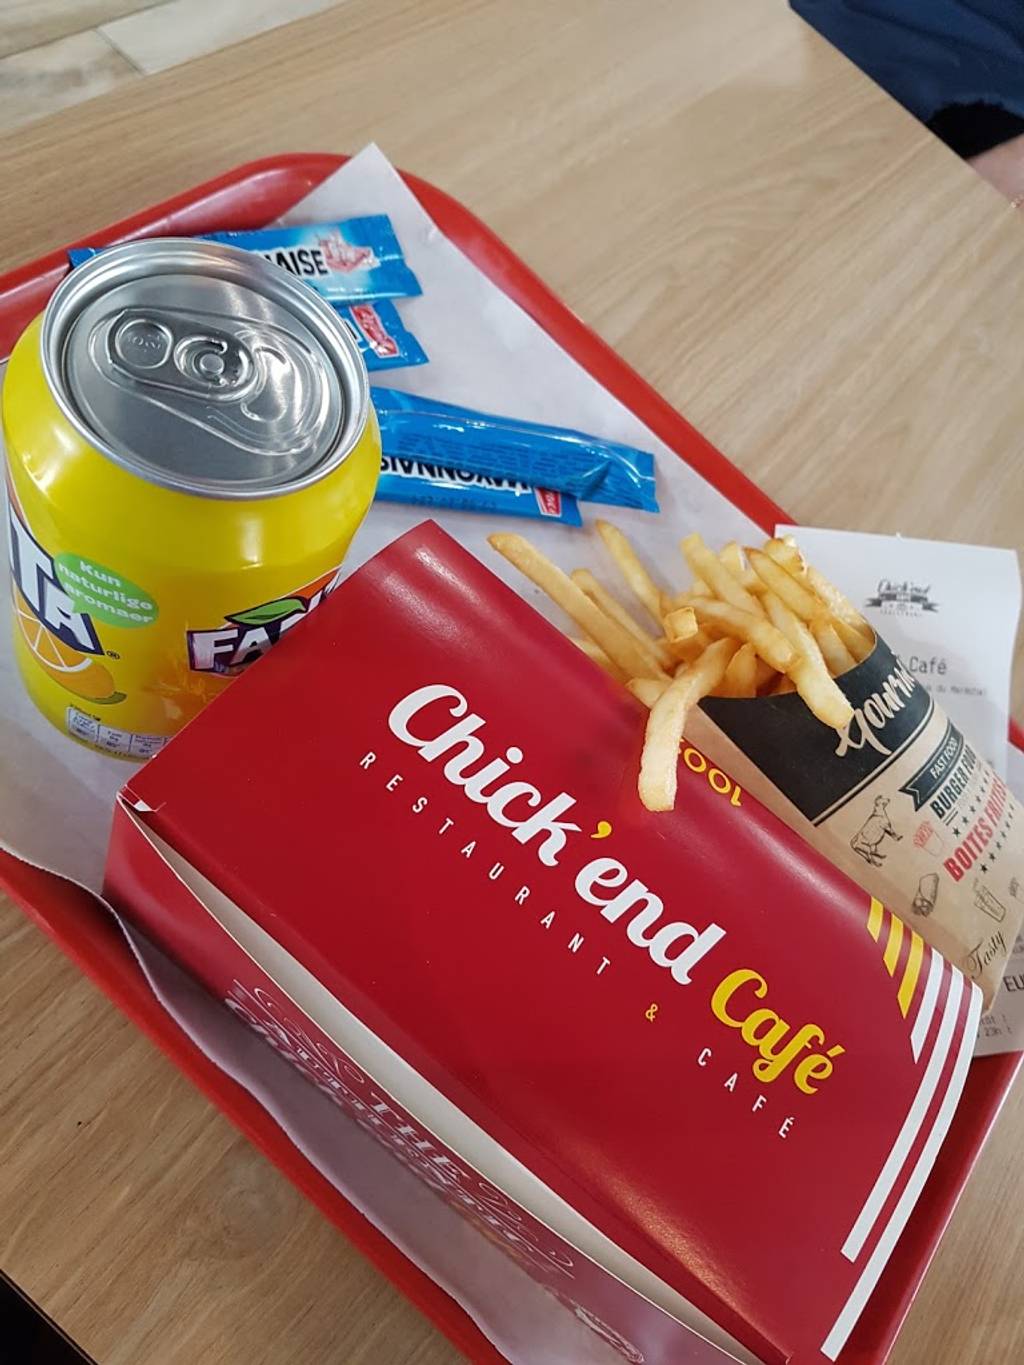 Chick'end Café Burger Fontenay-sous-Bois - Junk food Fast food Food Snack Side dish